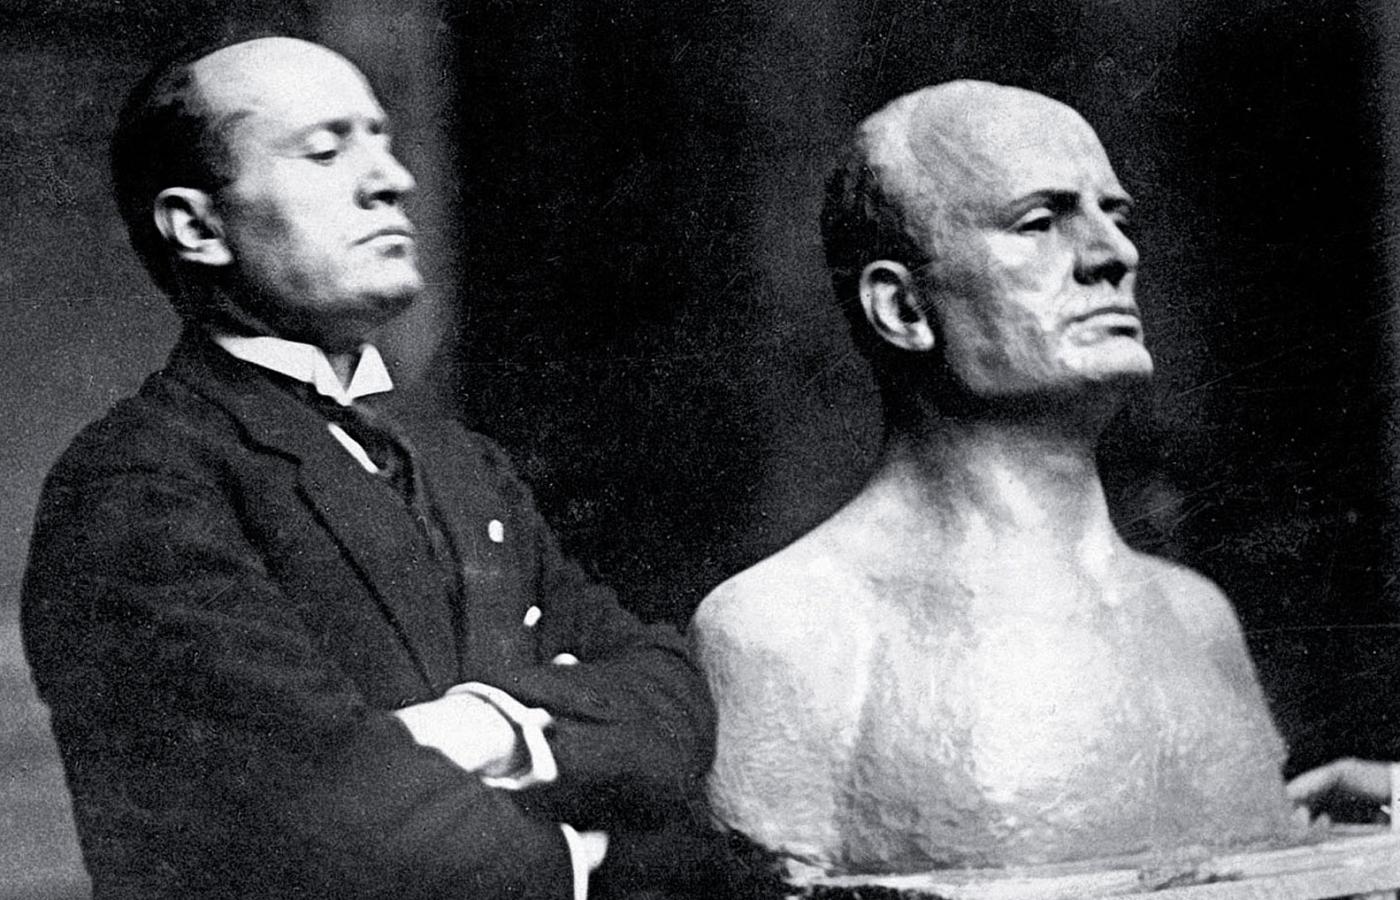 Benito Mussolini pozuje przy swoim popiersiu. Rzeźbiarz wyraźnie uszlachetnił twarz wodza (zdjęcie niedatowane).